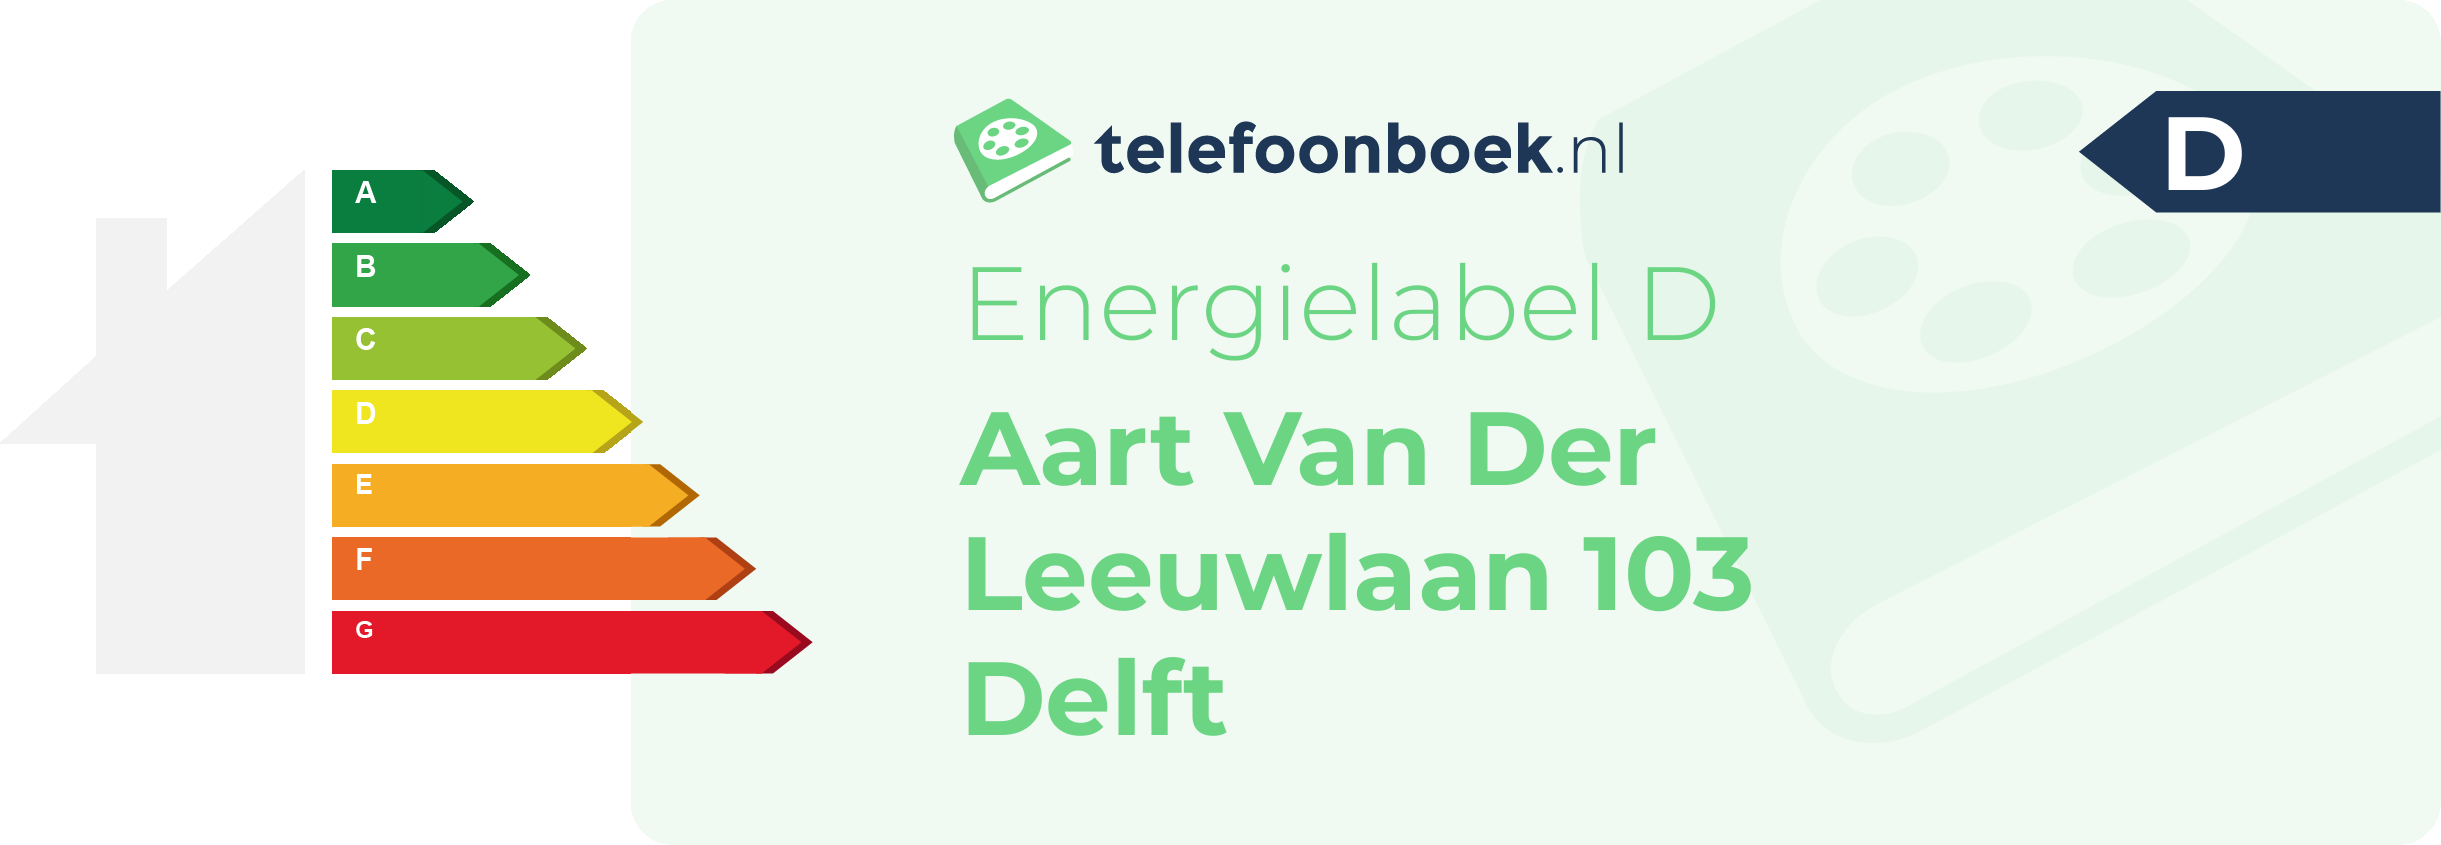 Energielabel Aart Van Der Leeuwlaan 103 Delft